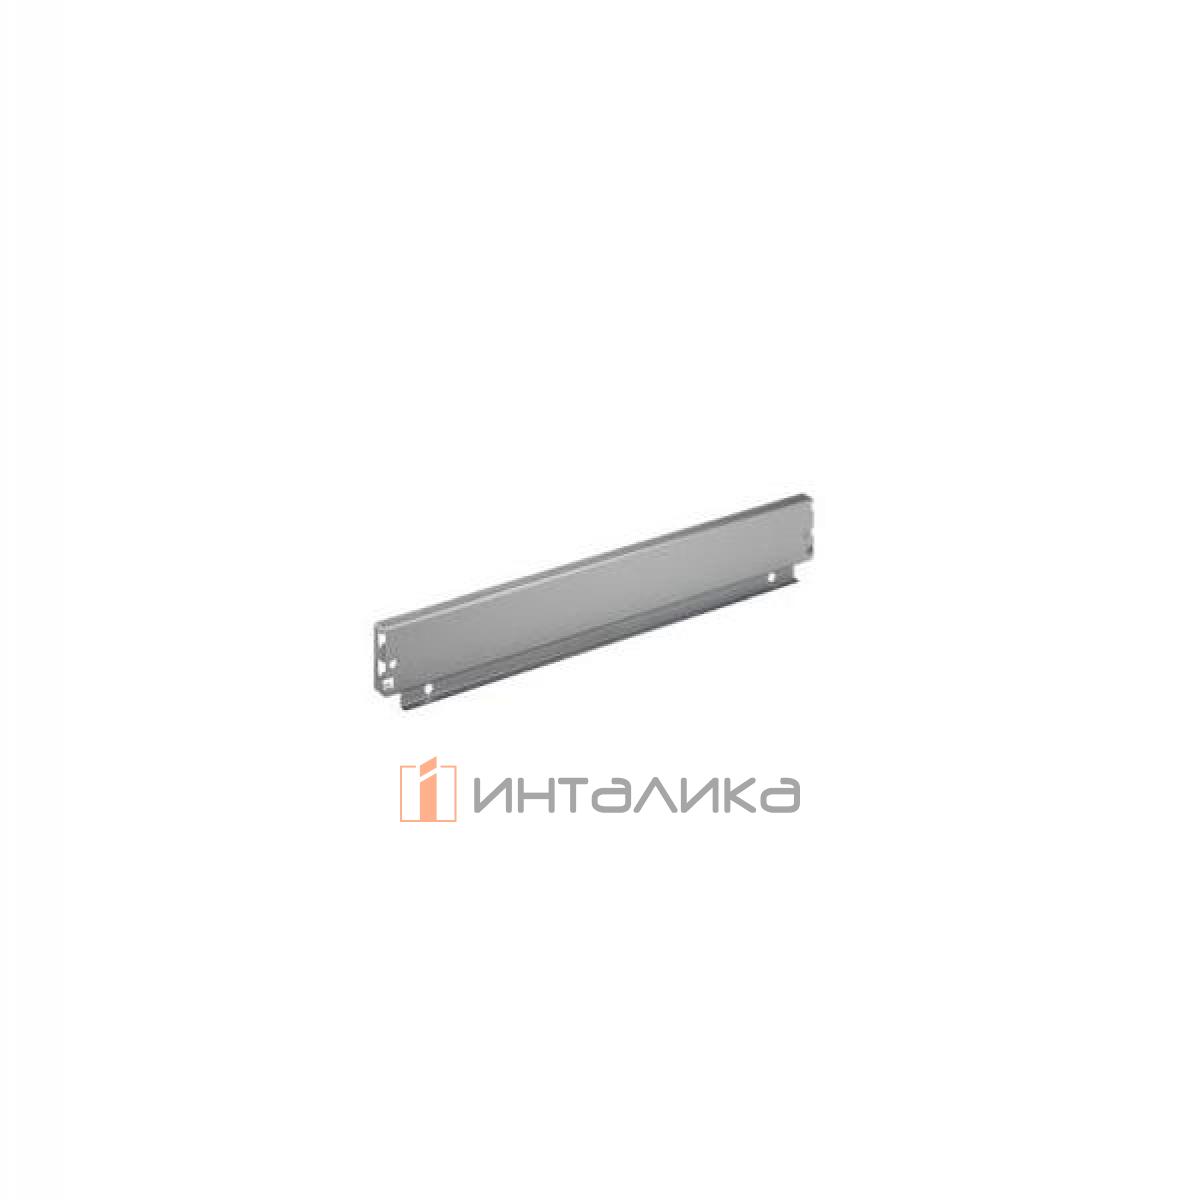 Задняя стенка HETTICH InnoTech/InnoTech Atira, высота 70мм, H900 мм, сталь, цвет серебристый, (V20)